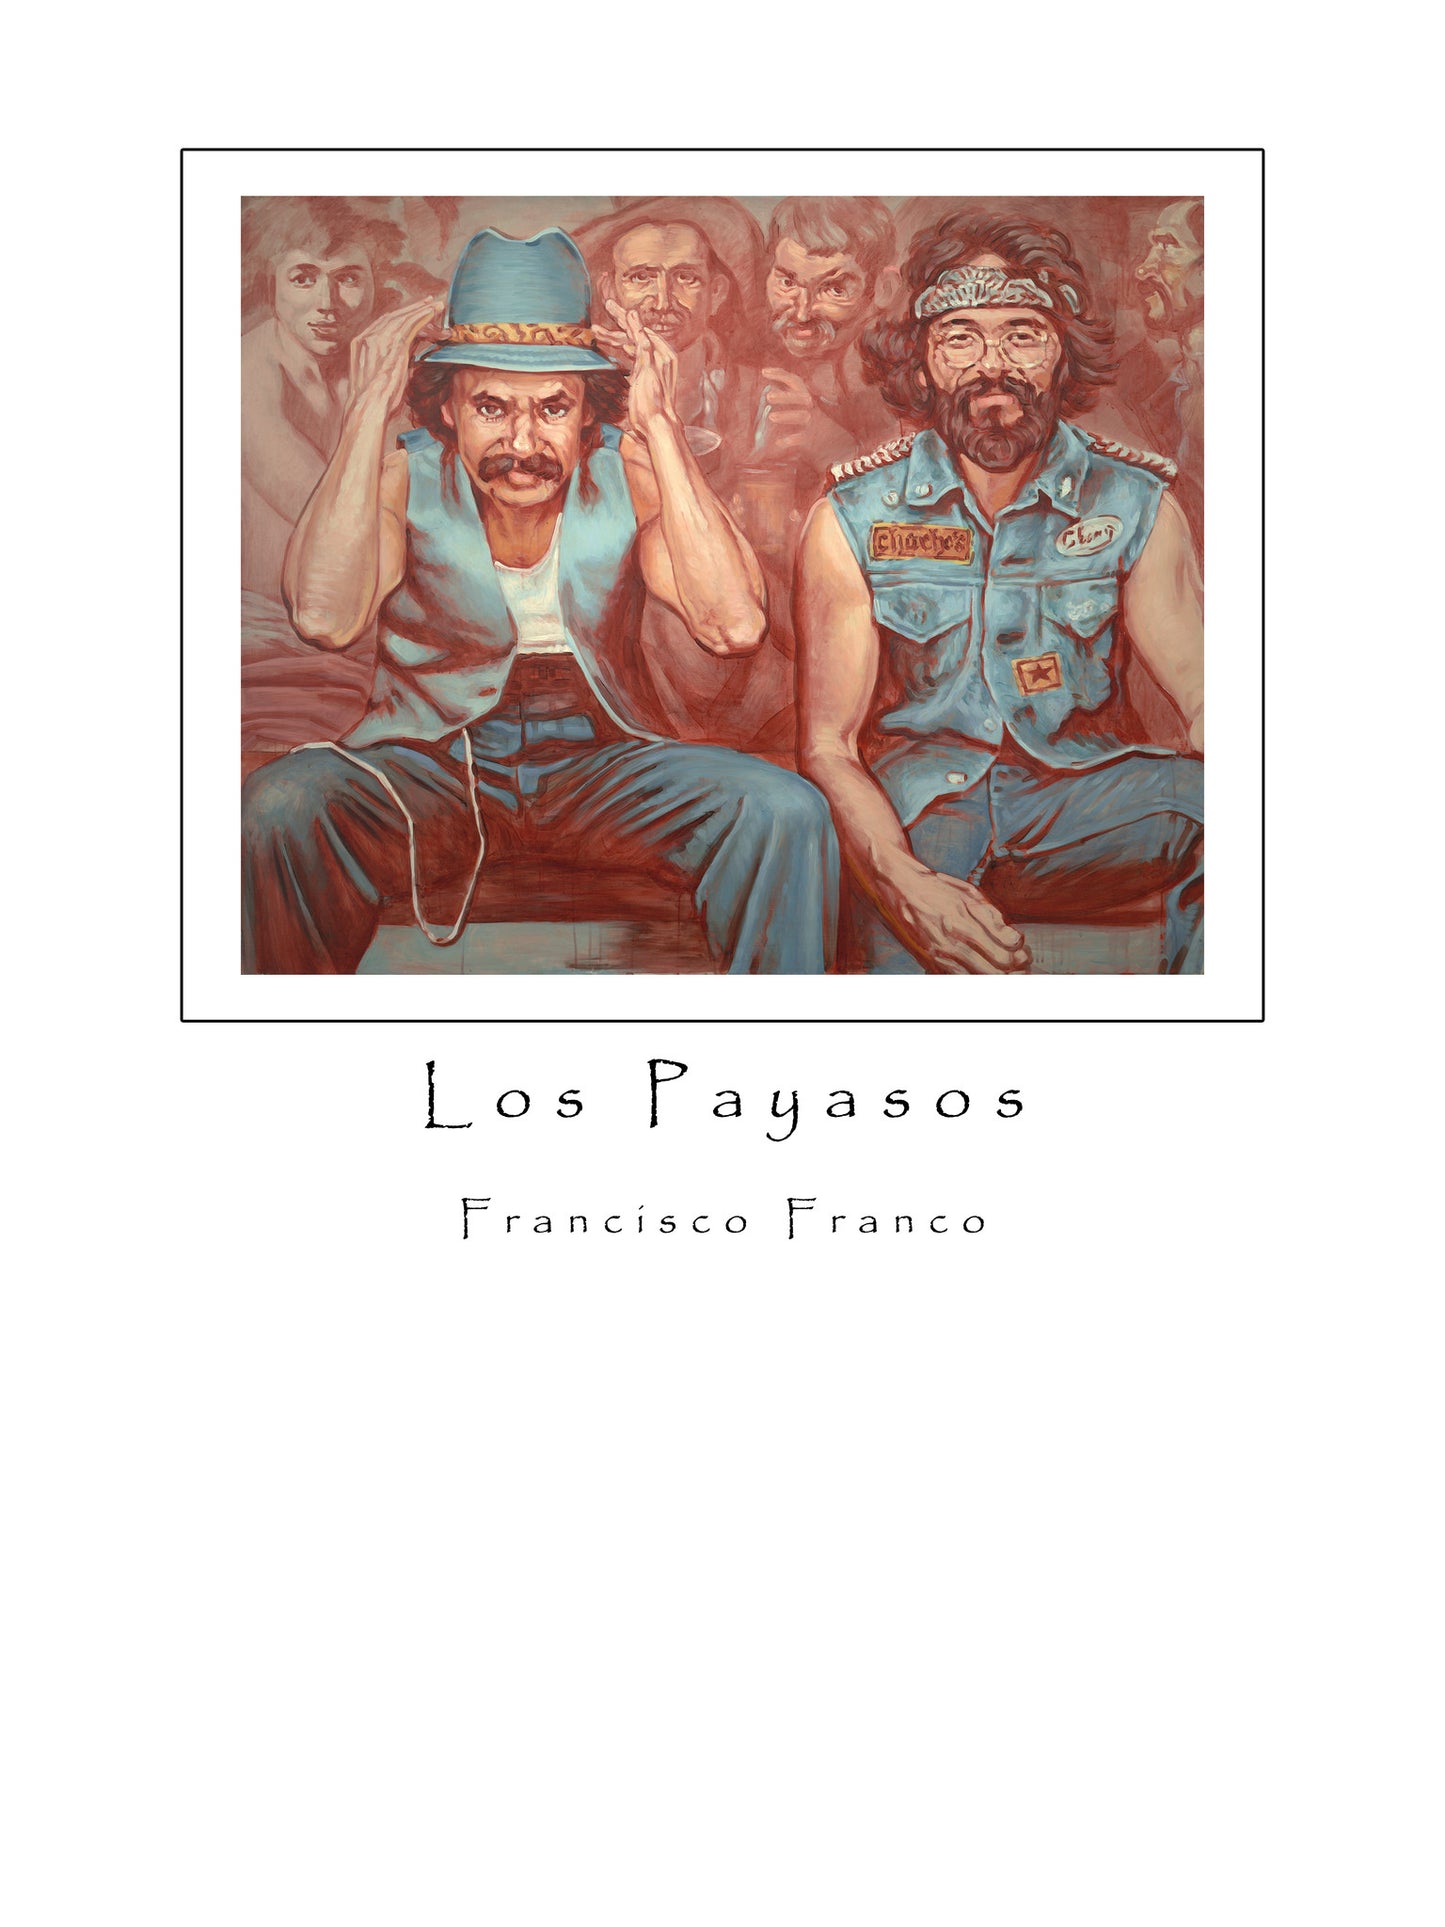 Limited Edition "Los Payasos" Print